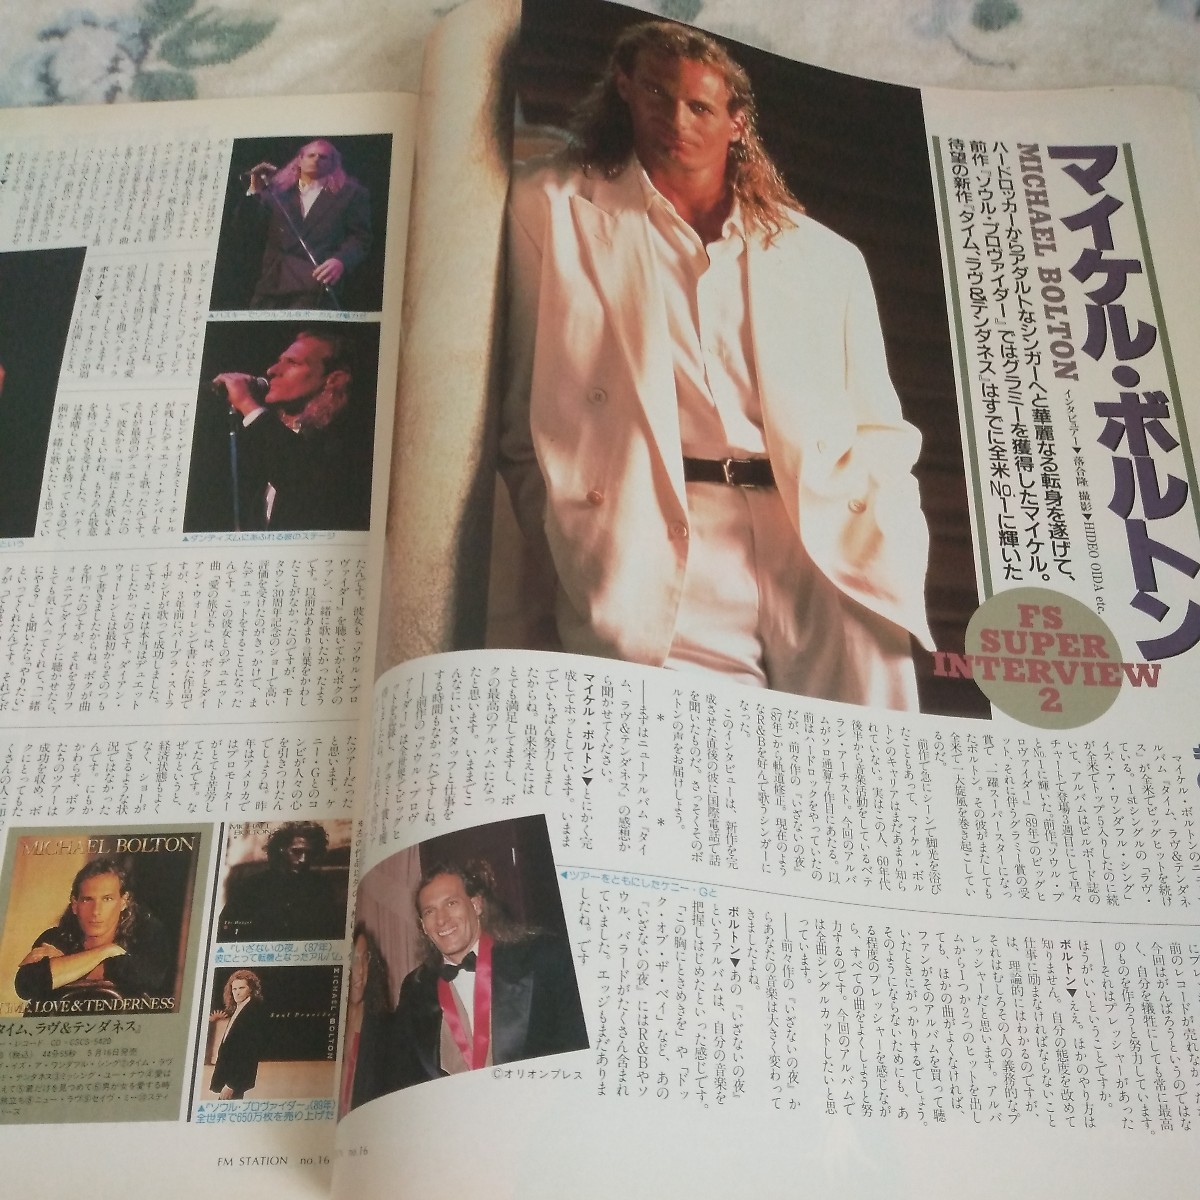 FM стойка Chuubu версия 1991 год 7 месяц 22 день номер Okamura Takako Michael болт n Nishida Hikaru популярный арка -тактный *F1 Driver фото этикетка имеется 